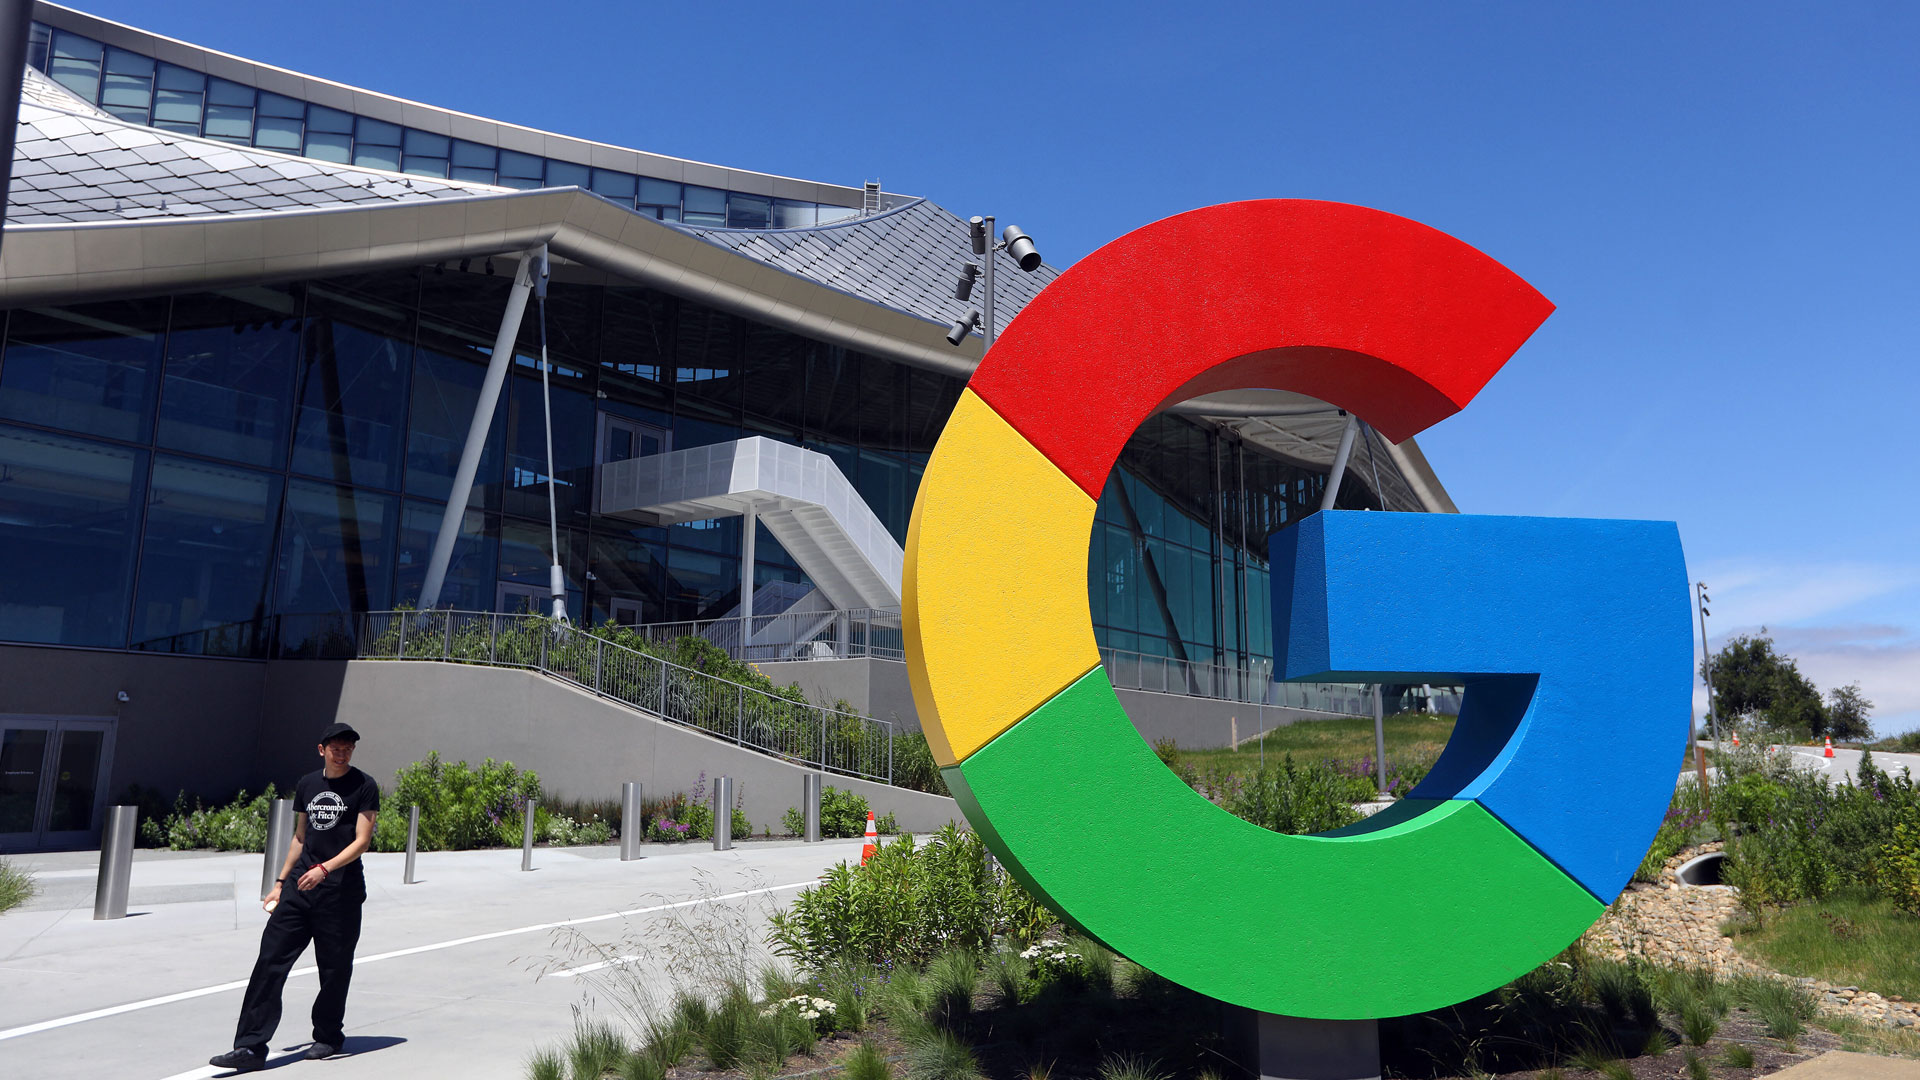 Google Firmensitz in Mountain View, Kalifornien